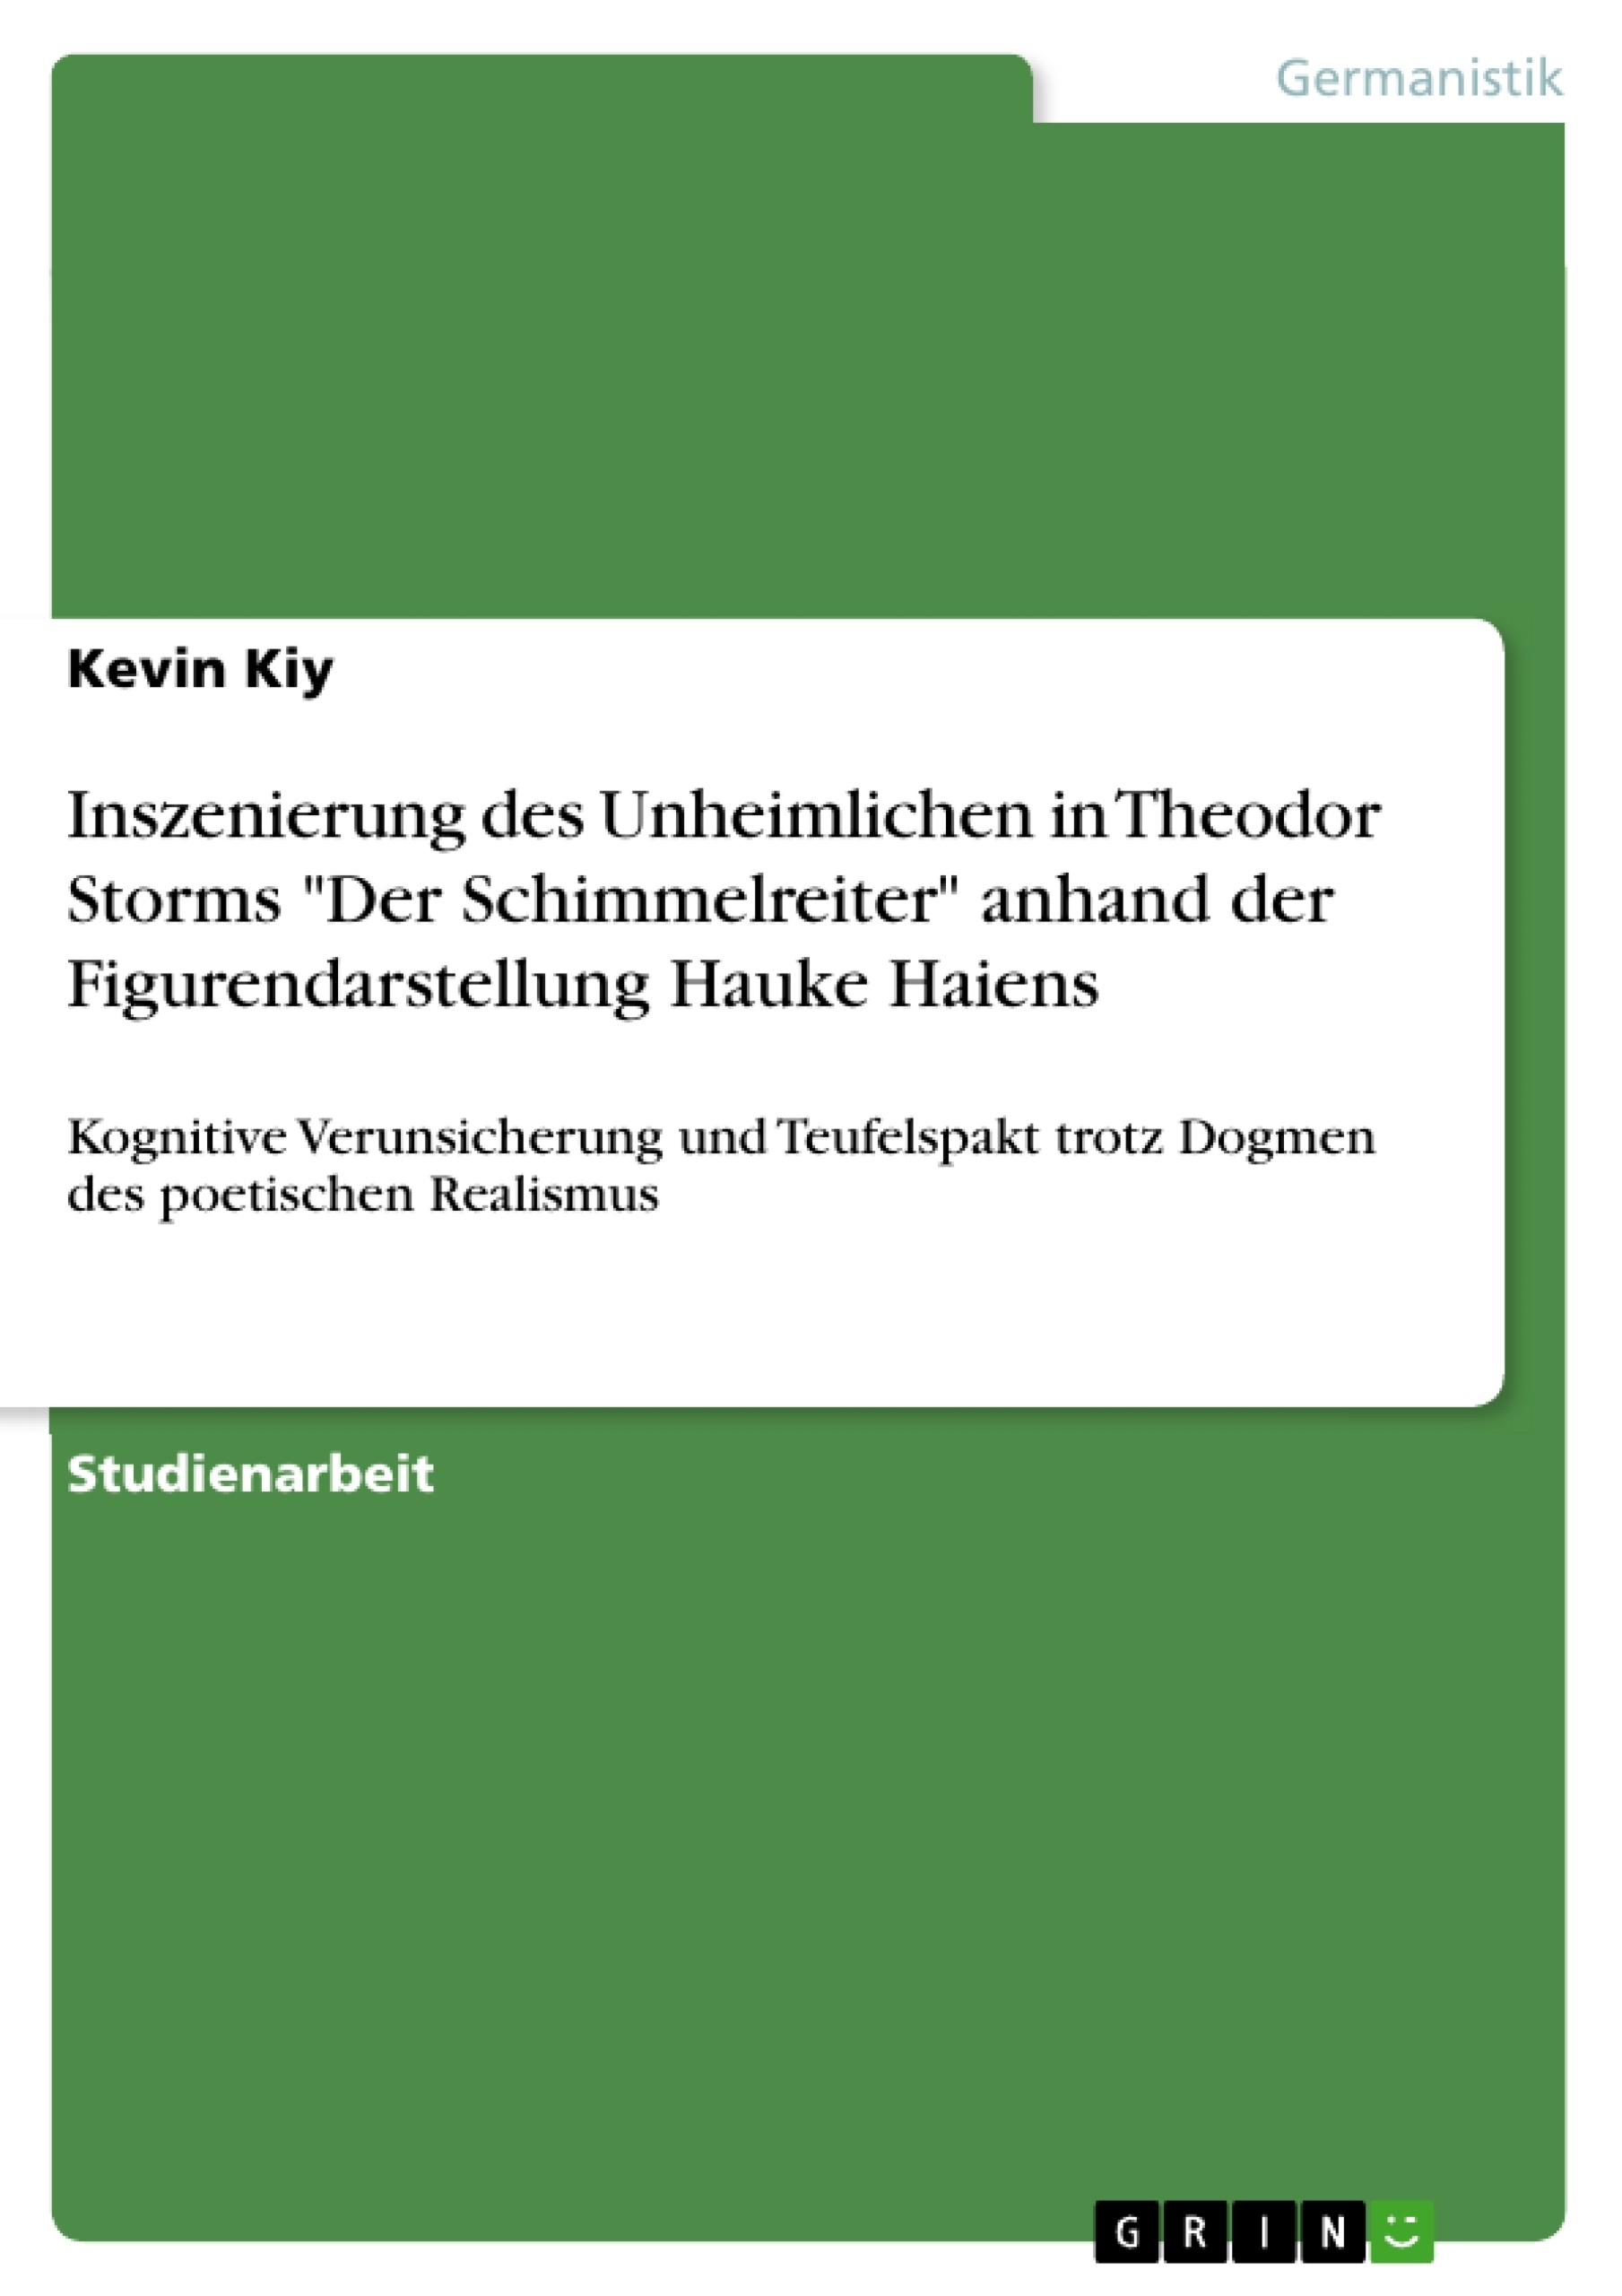 Titre: Inszenierung des Unheimlichen in Theodor Storms "Der Schimmelreiter" anhand der Figurendarstellung Hauke Haiens